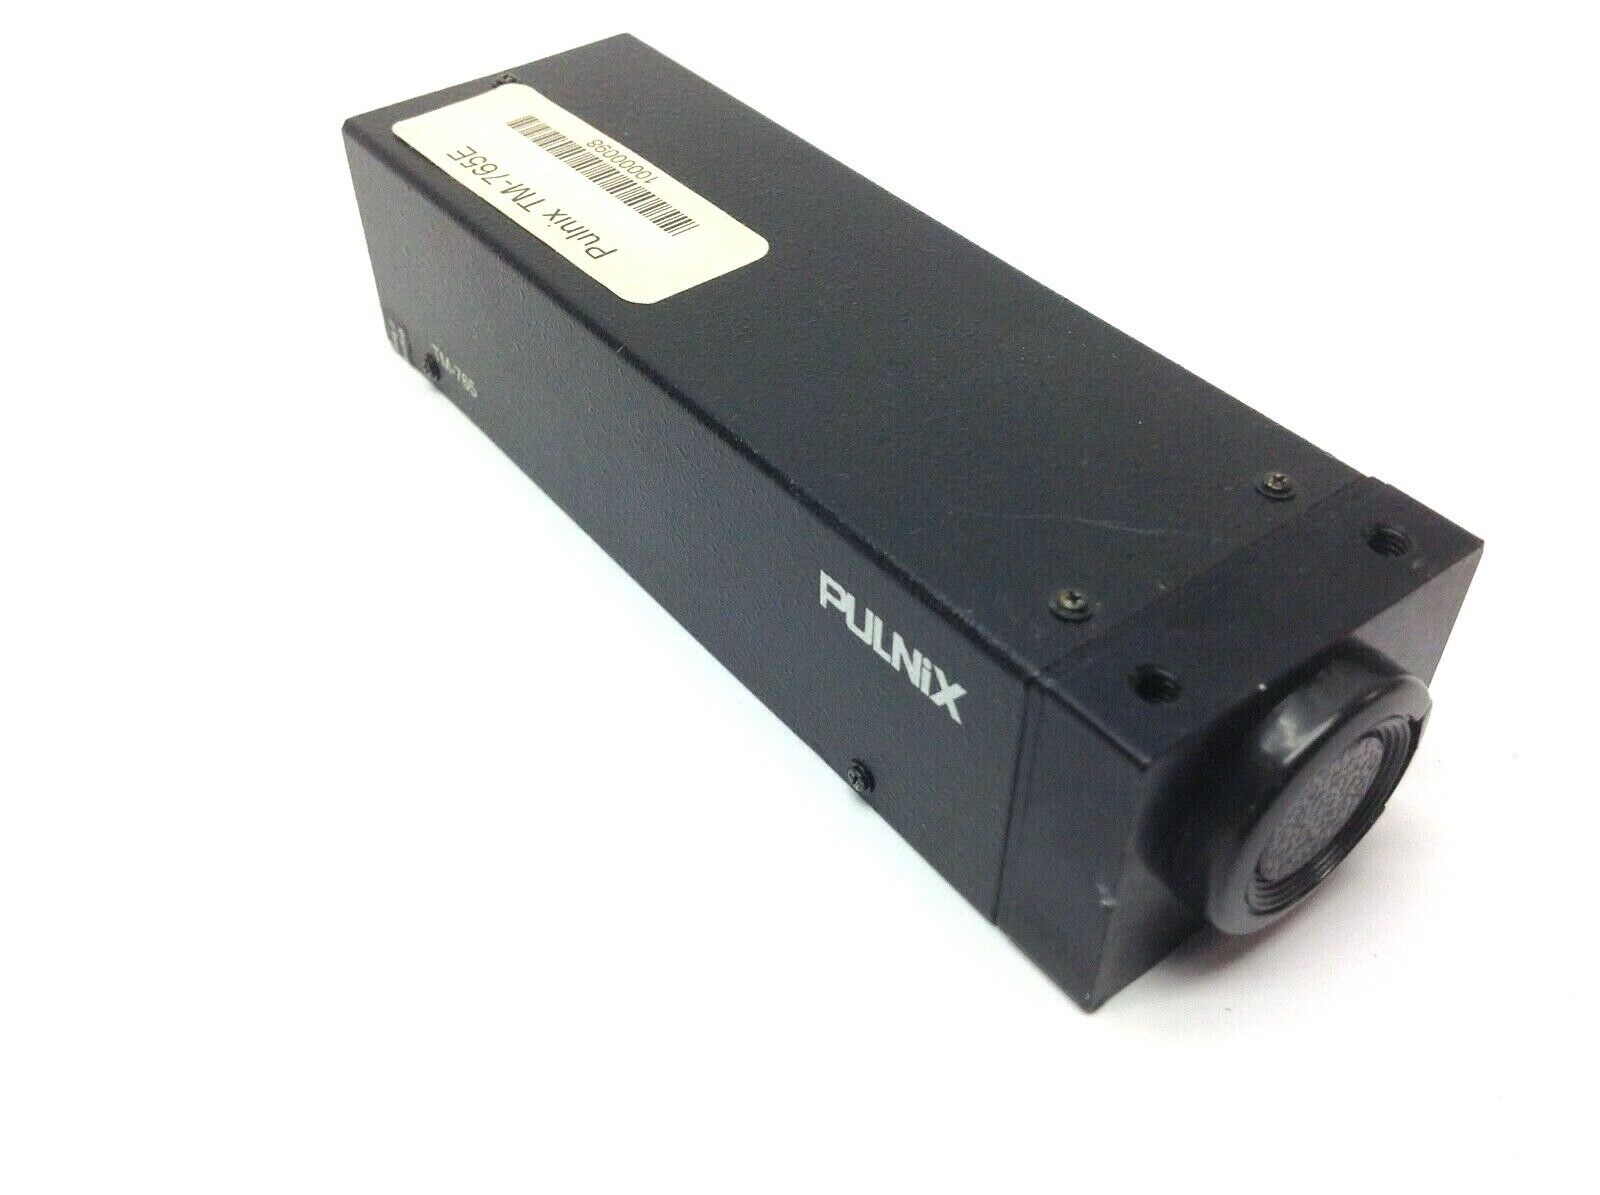 Pulnix TM-765E CCD Camera Monochrome